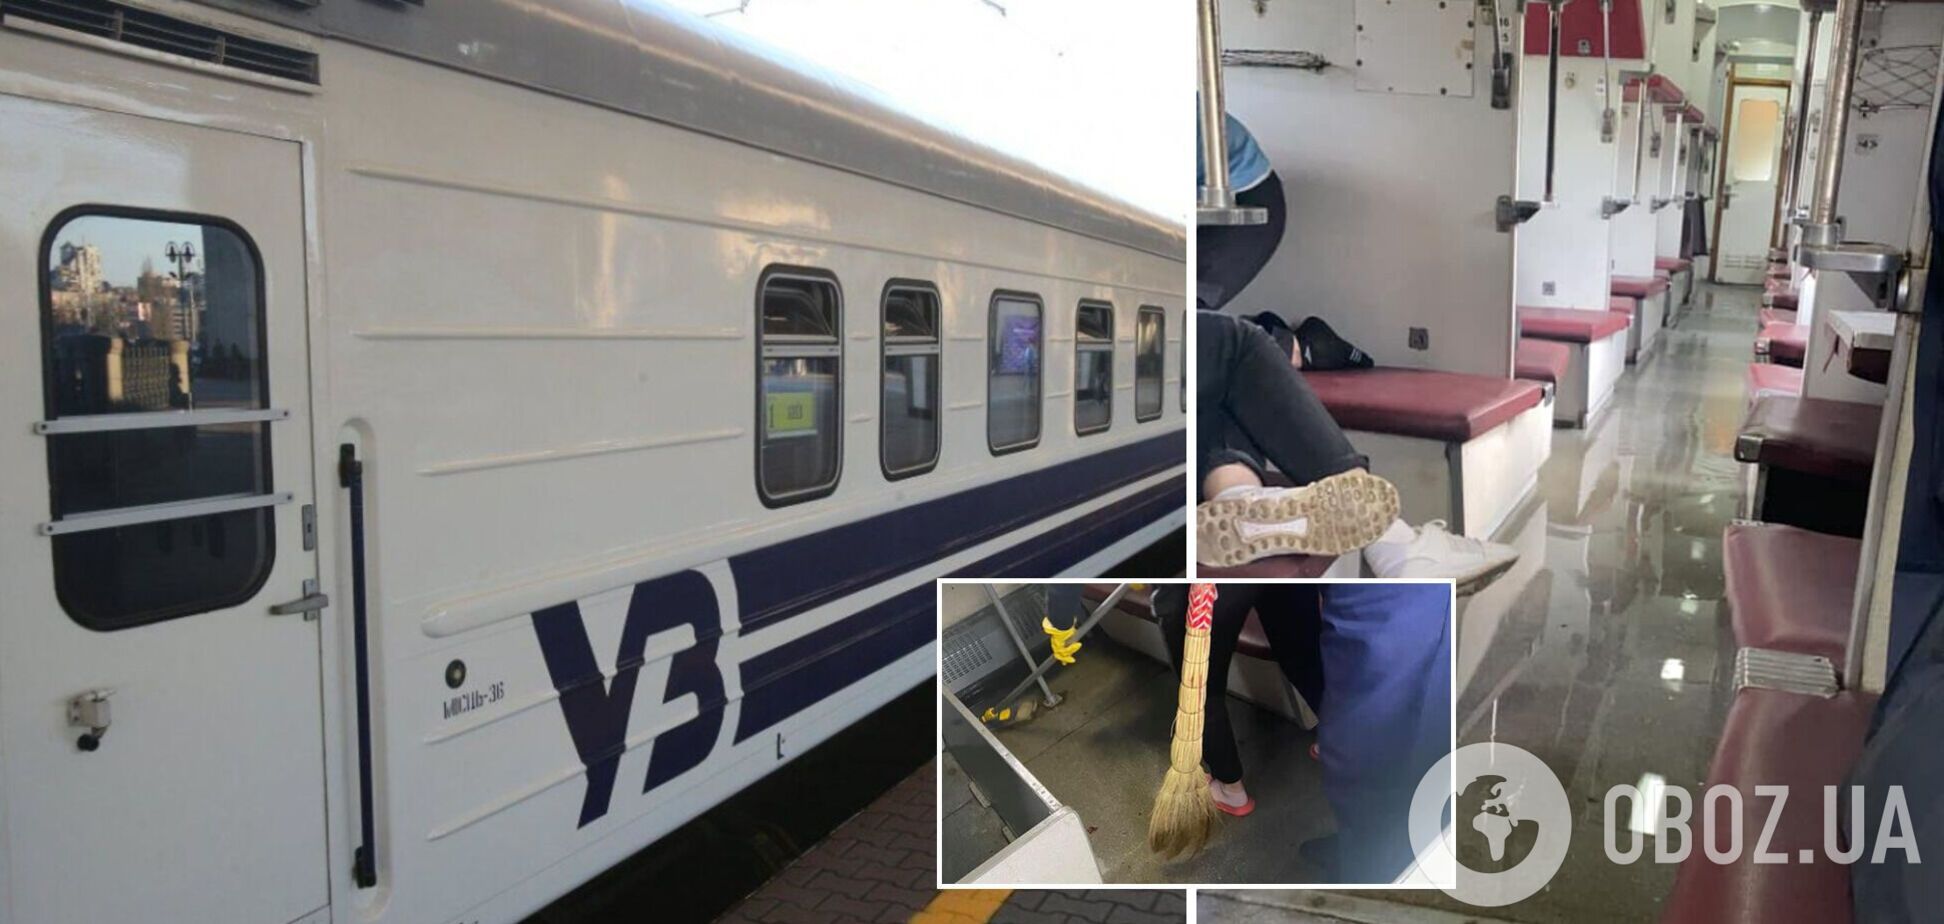 У вагоні 'Укрзалізниці' прорвало трубу: пасажири опублікували відео